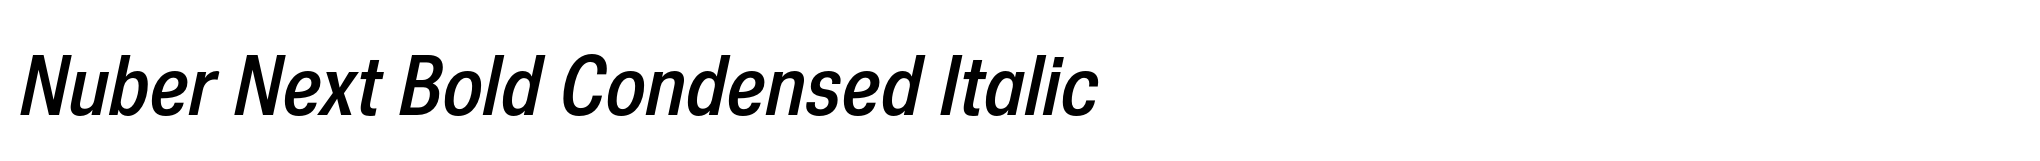 Nuber Next Bold Condensed Italic image